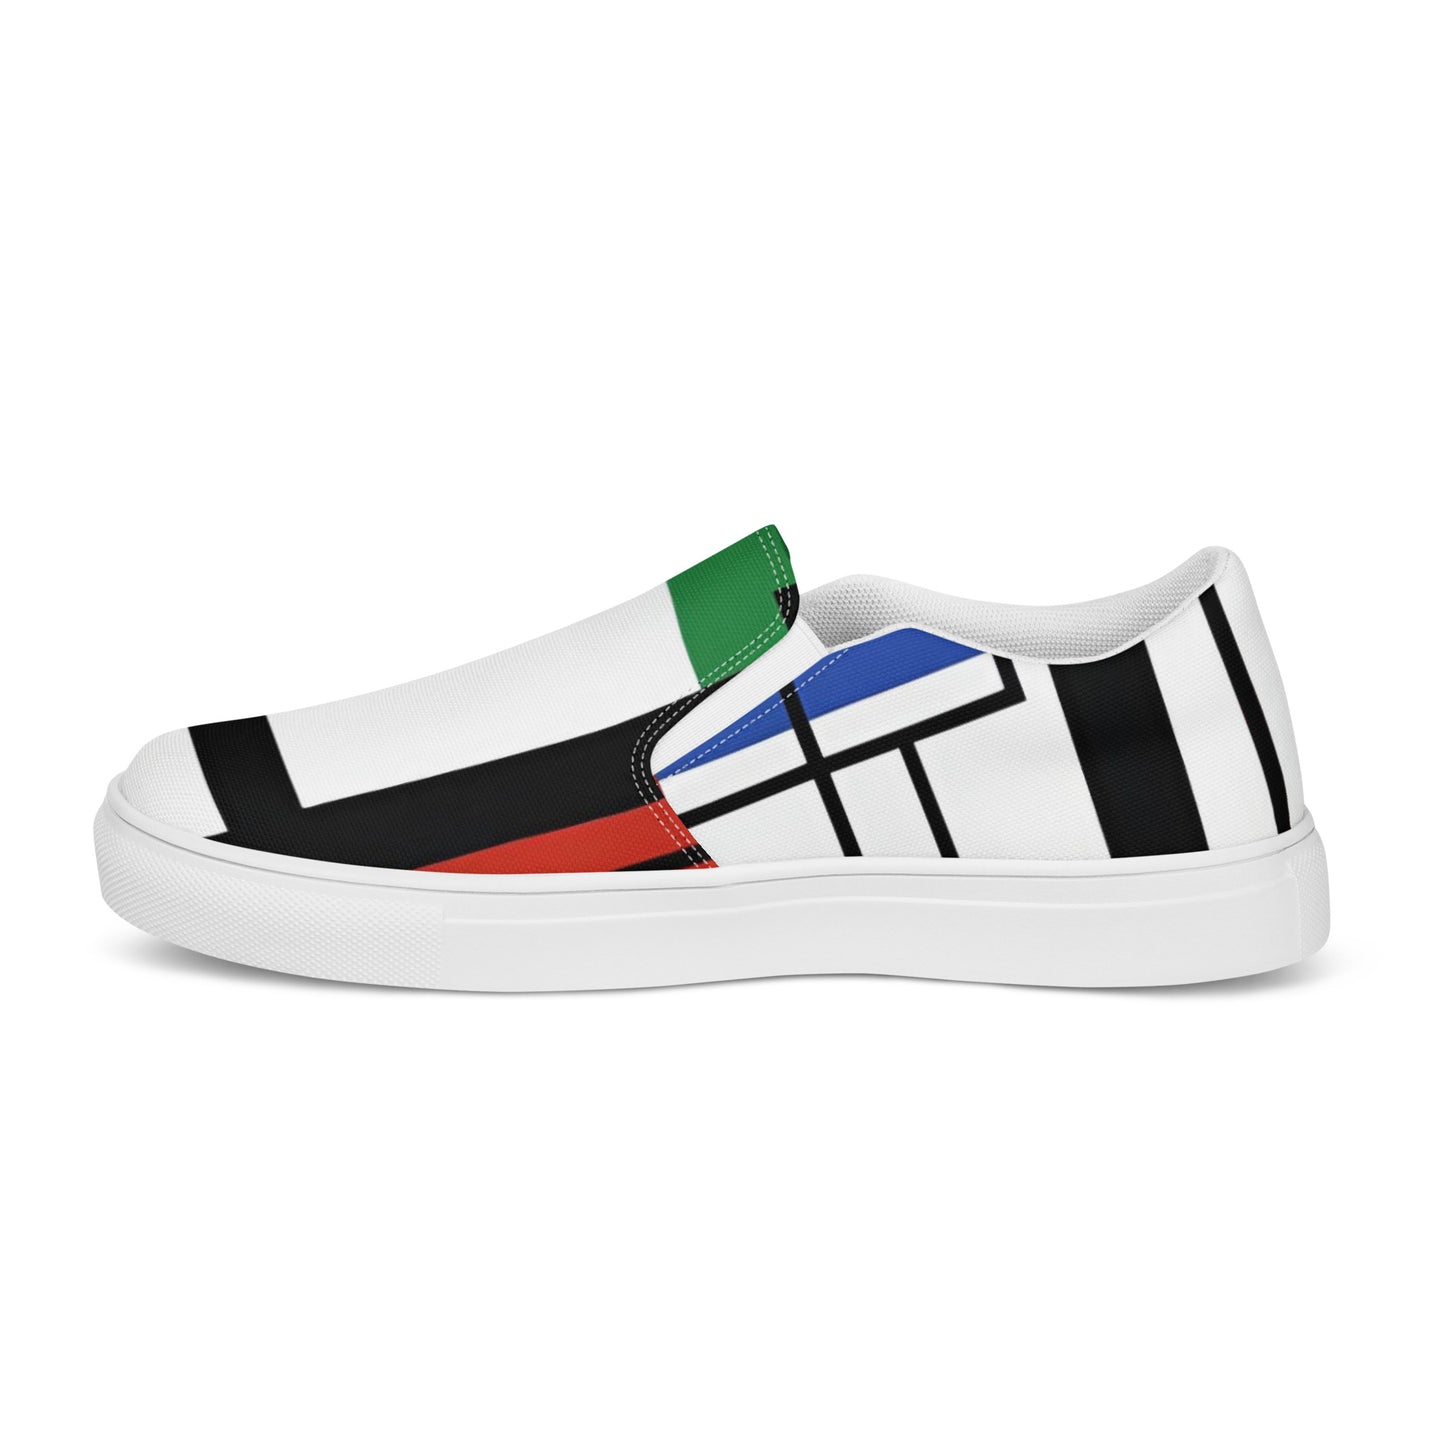 Piet Mondrian shoes